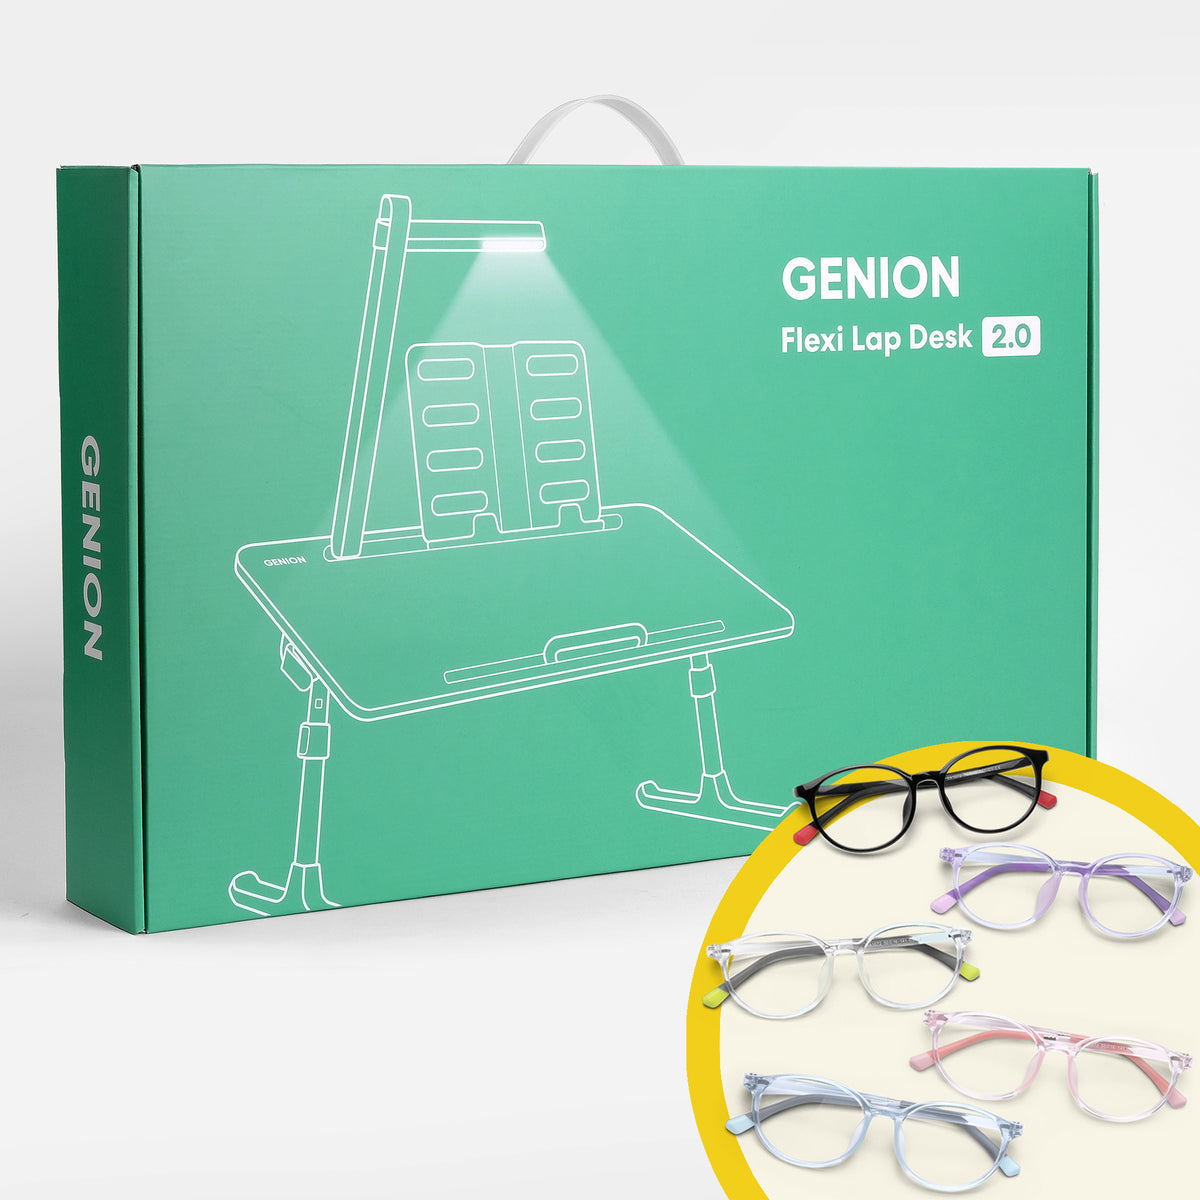 Eye Care Kit (For Teens)